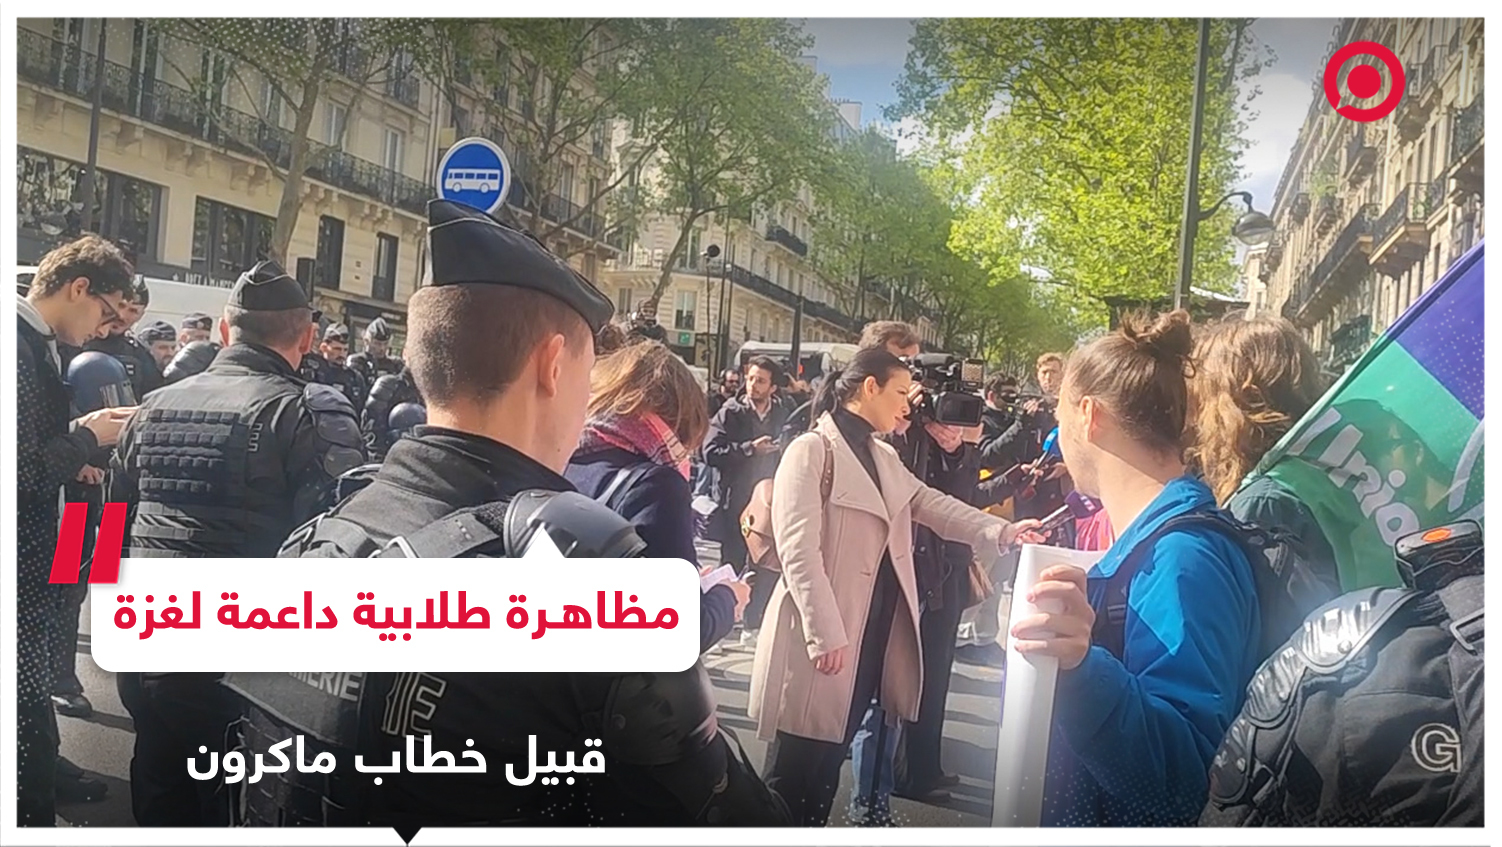 عشرات الطلاب المحتجين يتجمعون أمام جامعة السوربون في باريس قبيل خطاب ماكرون